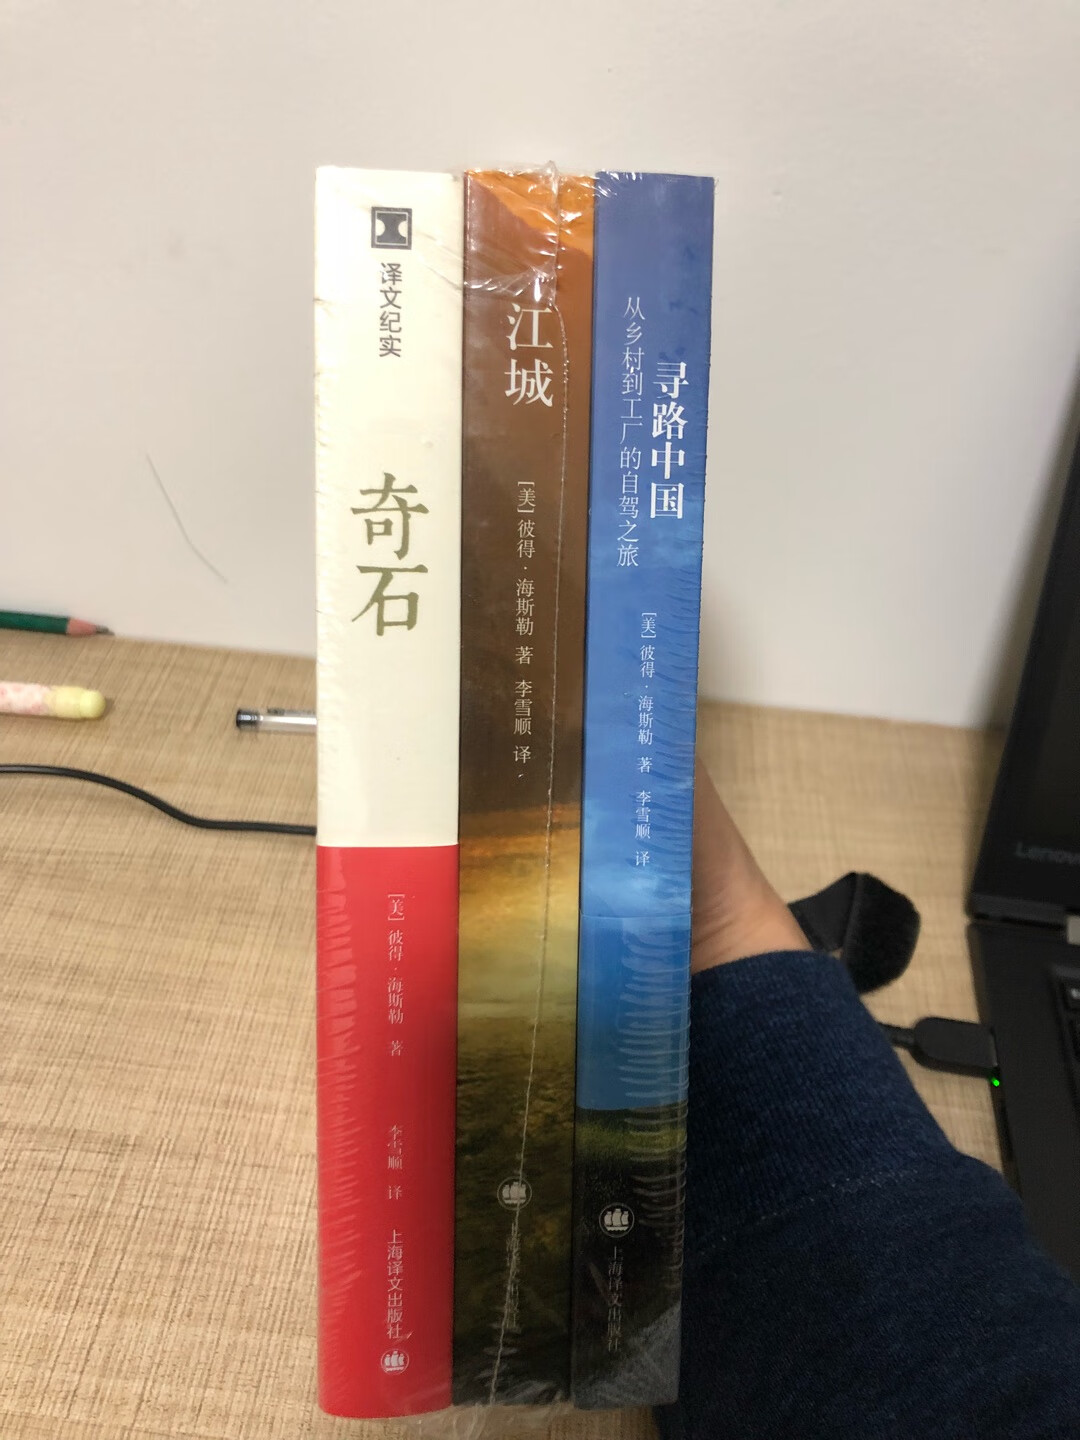 还不错，外国人写中国，可以读一读。但是并没有说的那么好。这书卖了那么多册也让我很惊讶。《江城》烧好，其他比较一般。